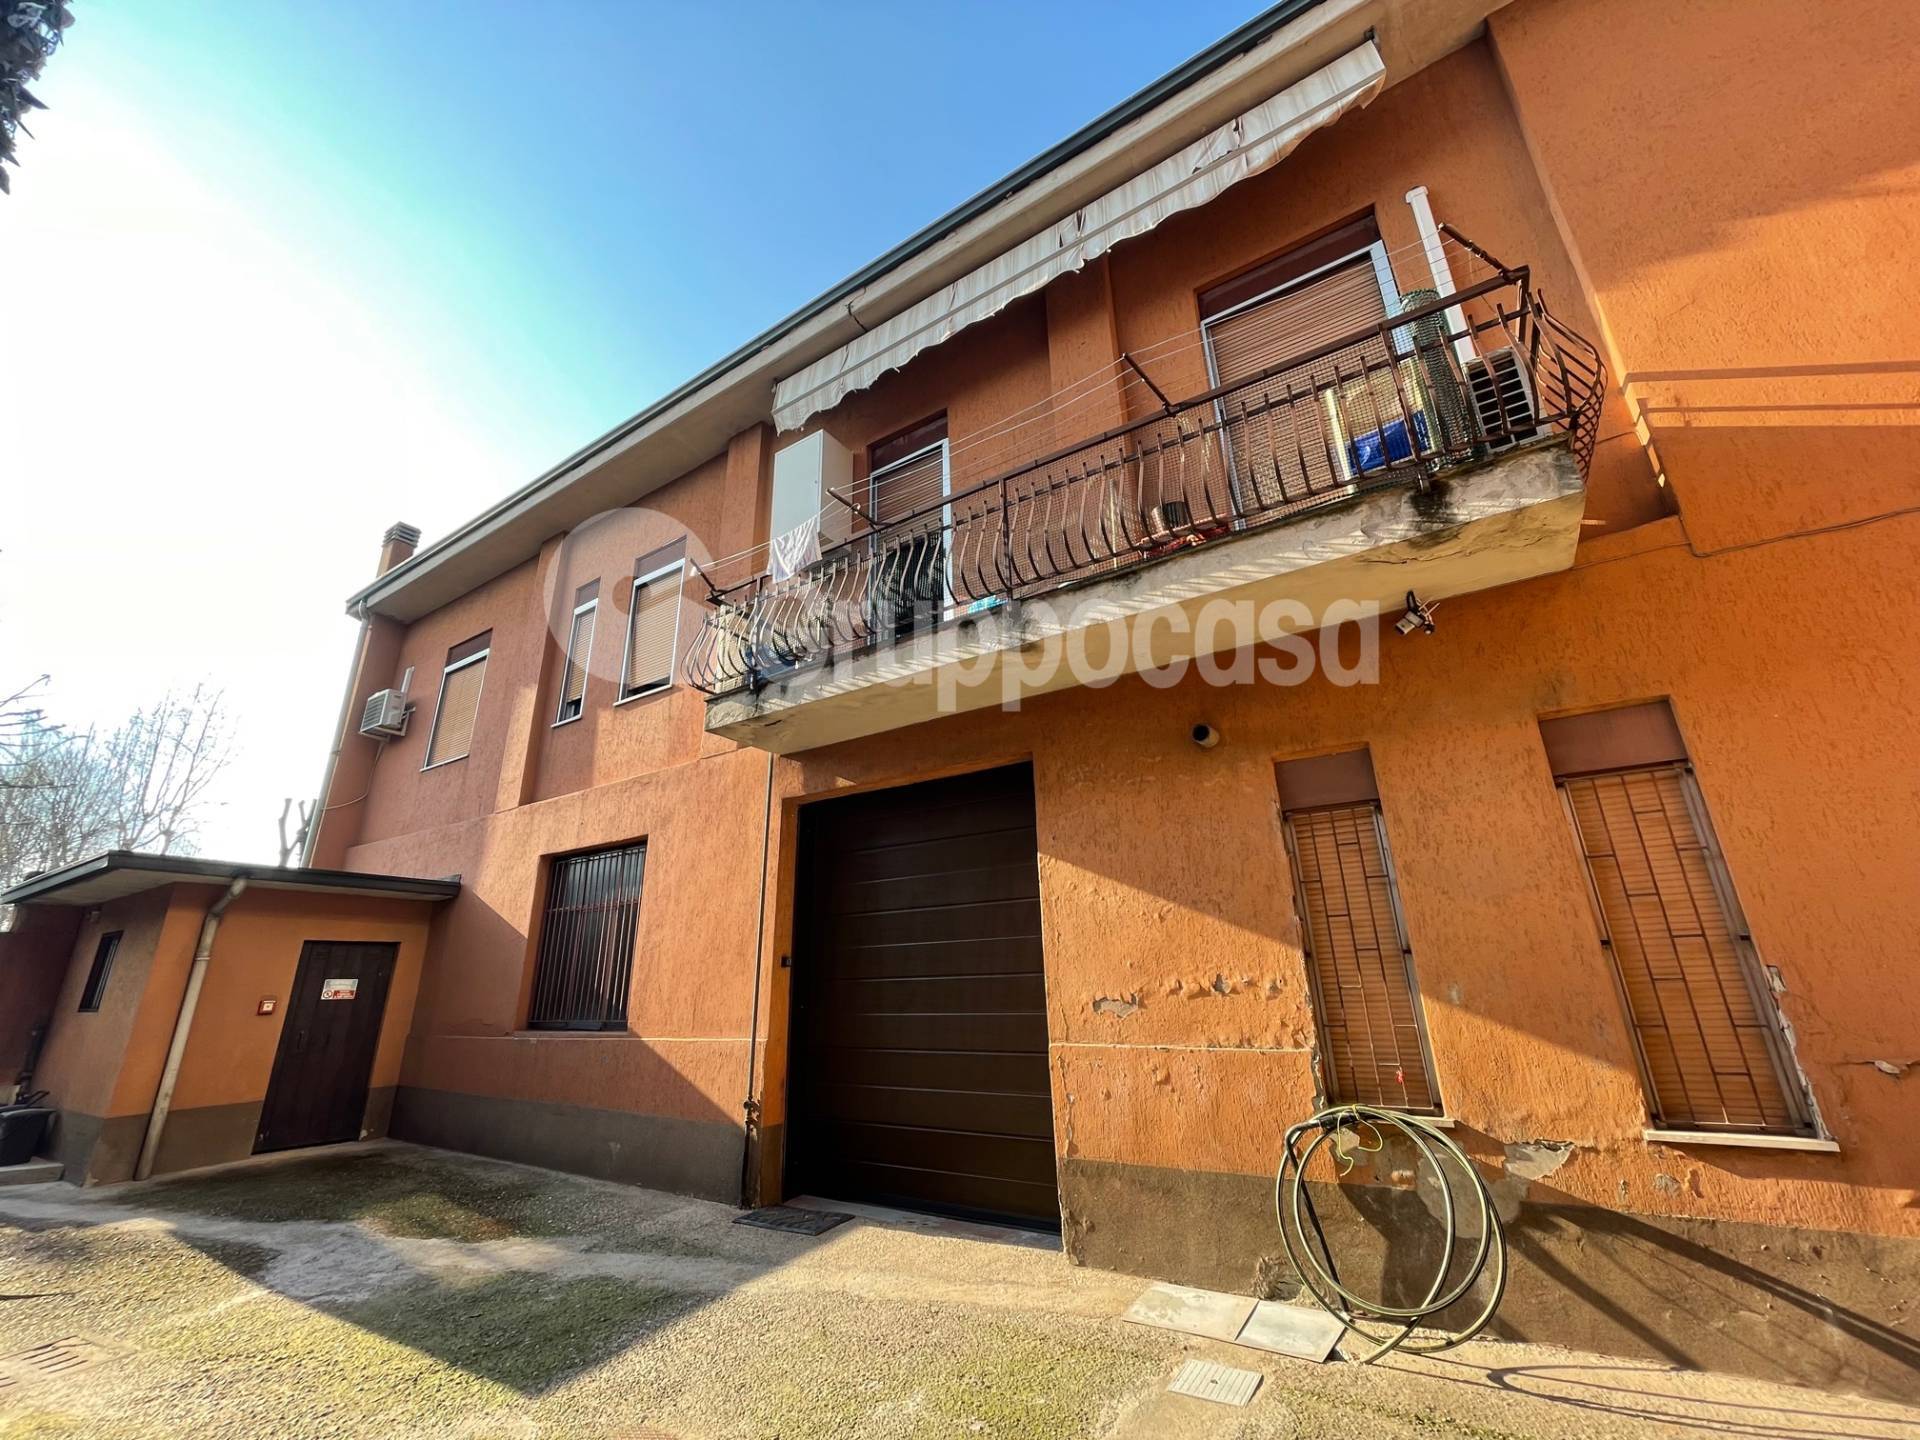 Appartamento in vendita a Marcallo con Casone, 3 locali, prezzo € 65.000 | PortaleAgenzieImmobiliari.it